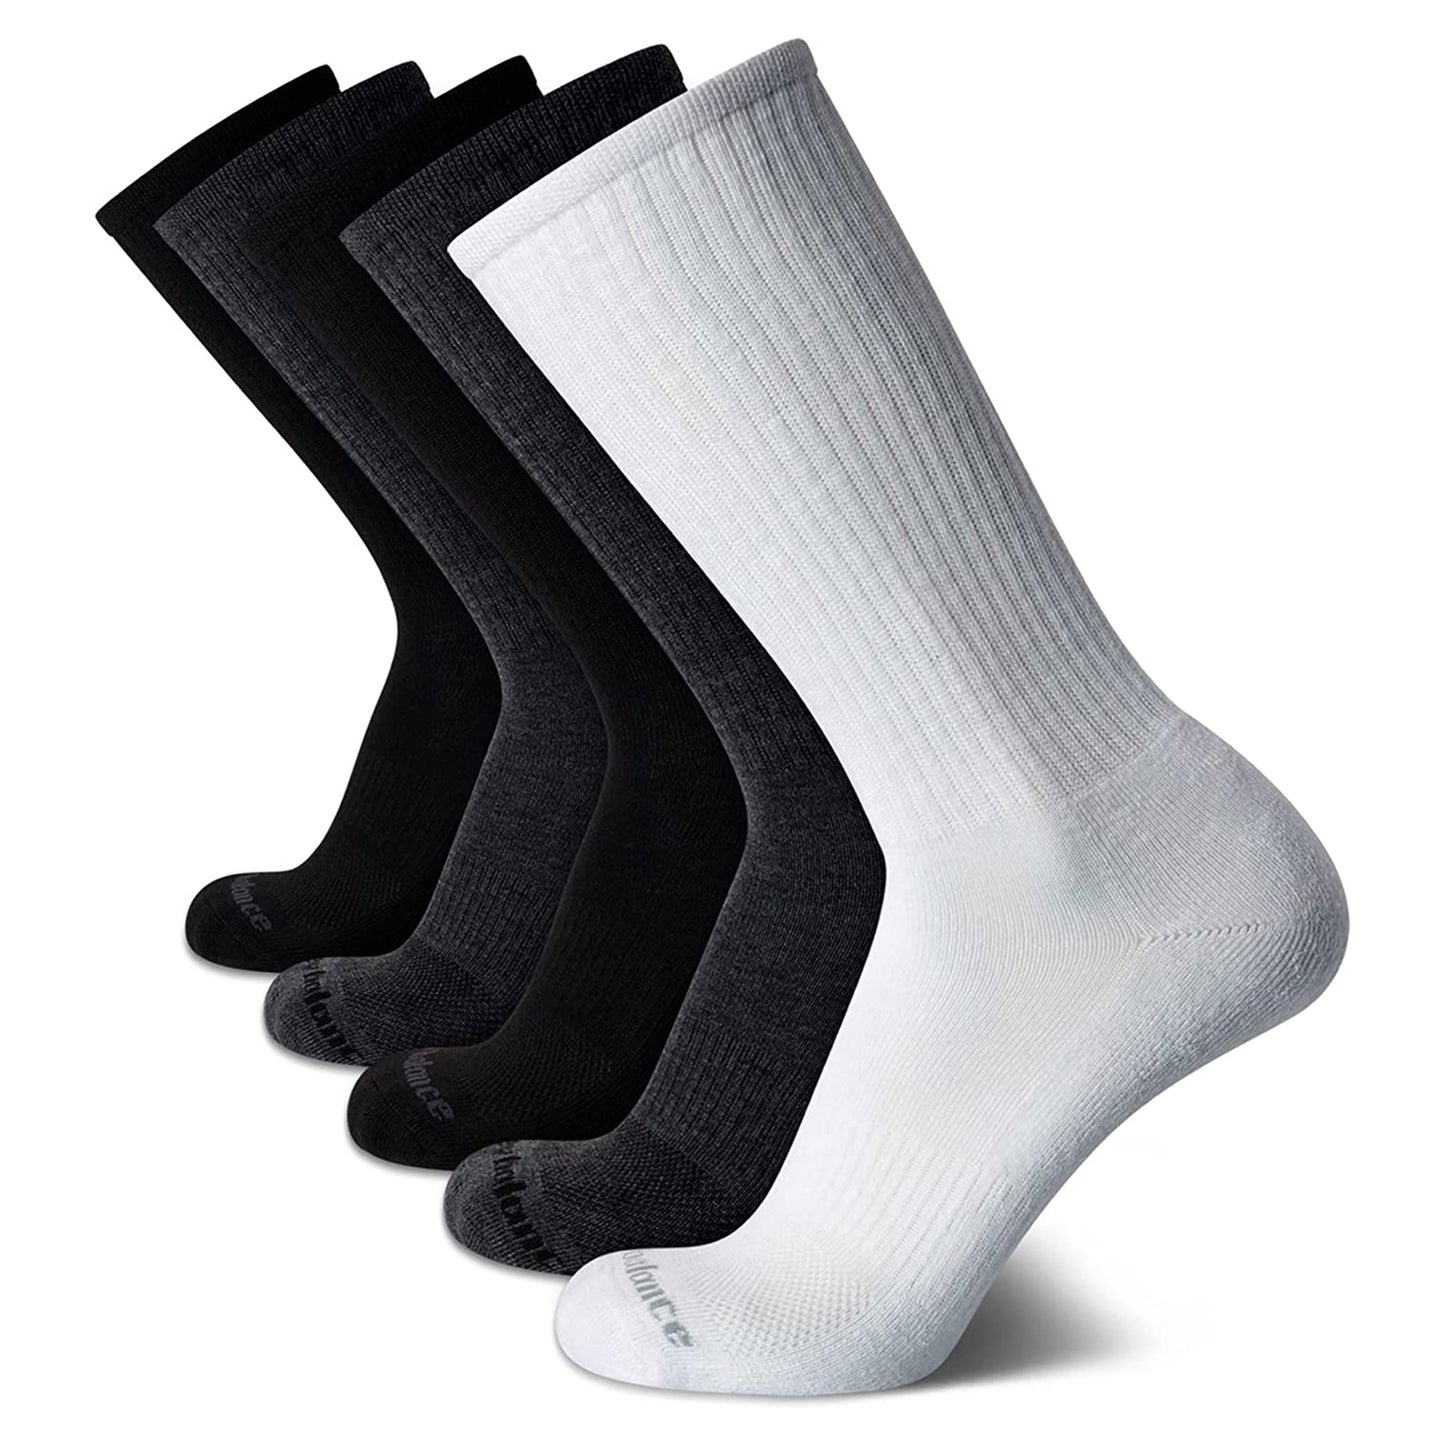 Peltz Shoes  Men's New Balance Athletic Crew Socks - 5 Pack White/Grey/Black NBM201CR06002